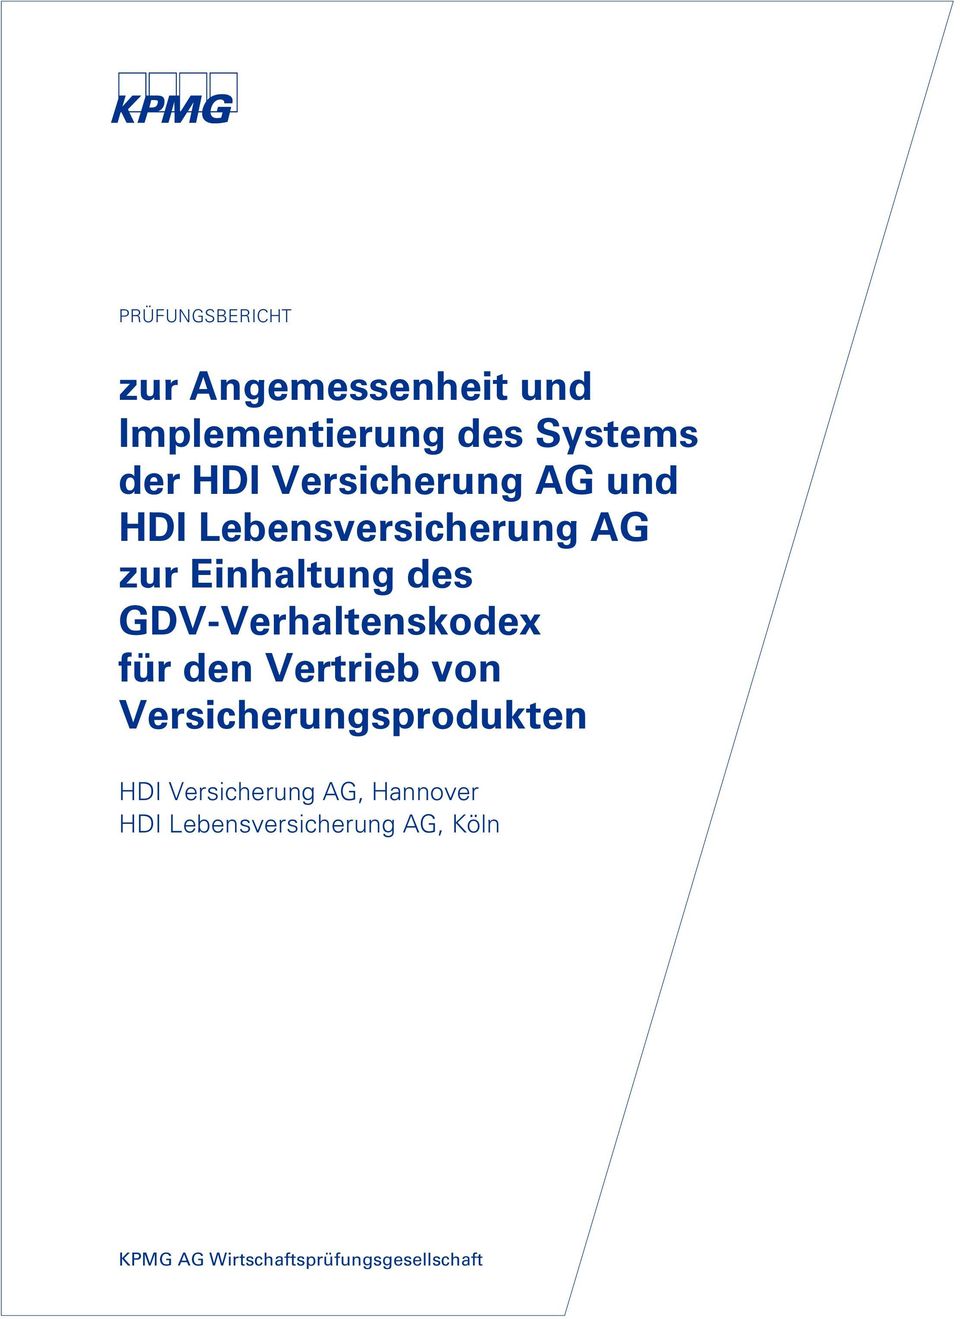 GDV-Verhaltenskodex für den Vertrieb von Versicherungsprodukten